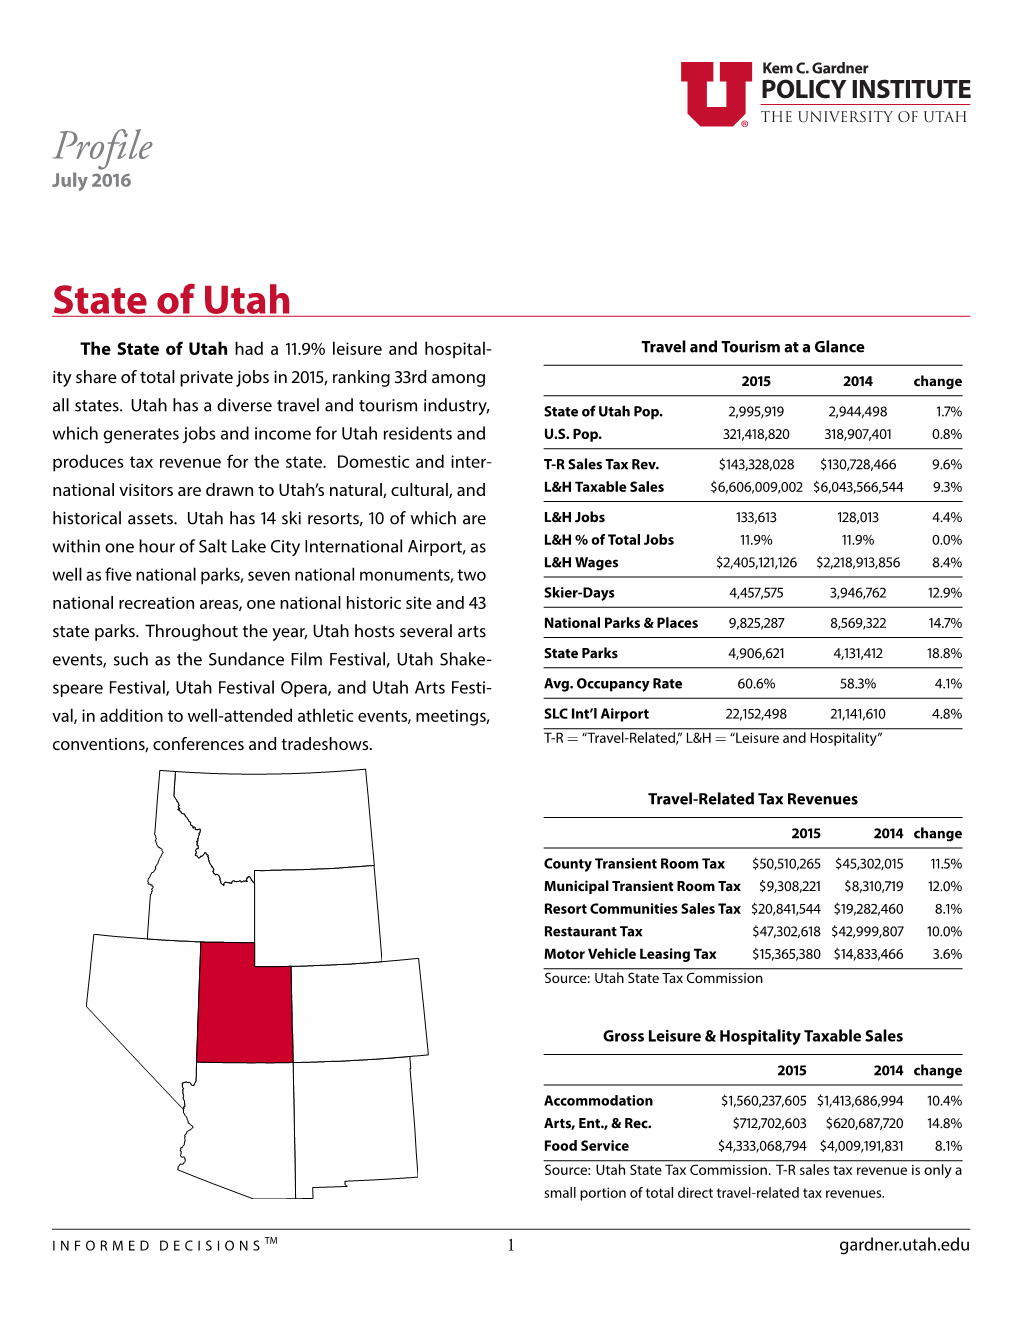 Profile State of Utah